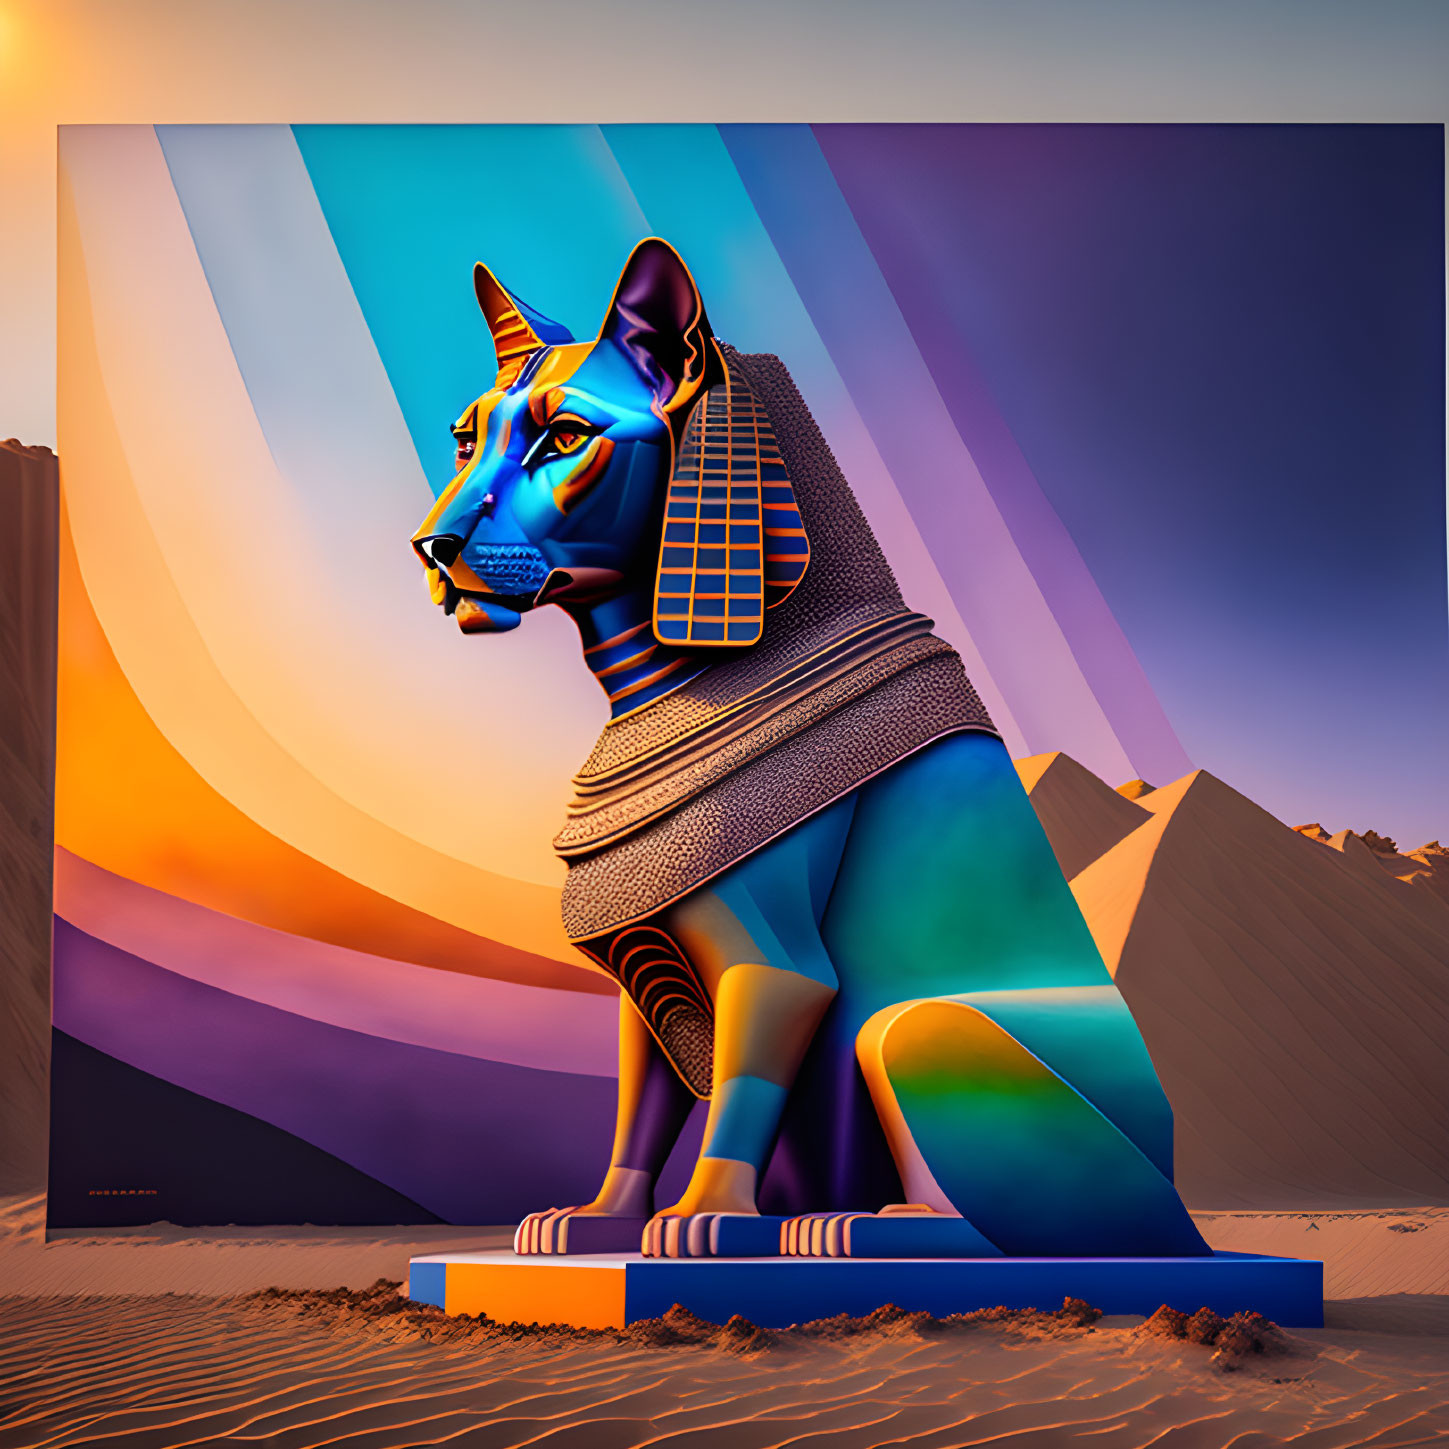 Vibrant blue and orange Great Sphinx digital artwork in desert setting